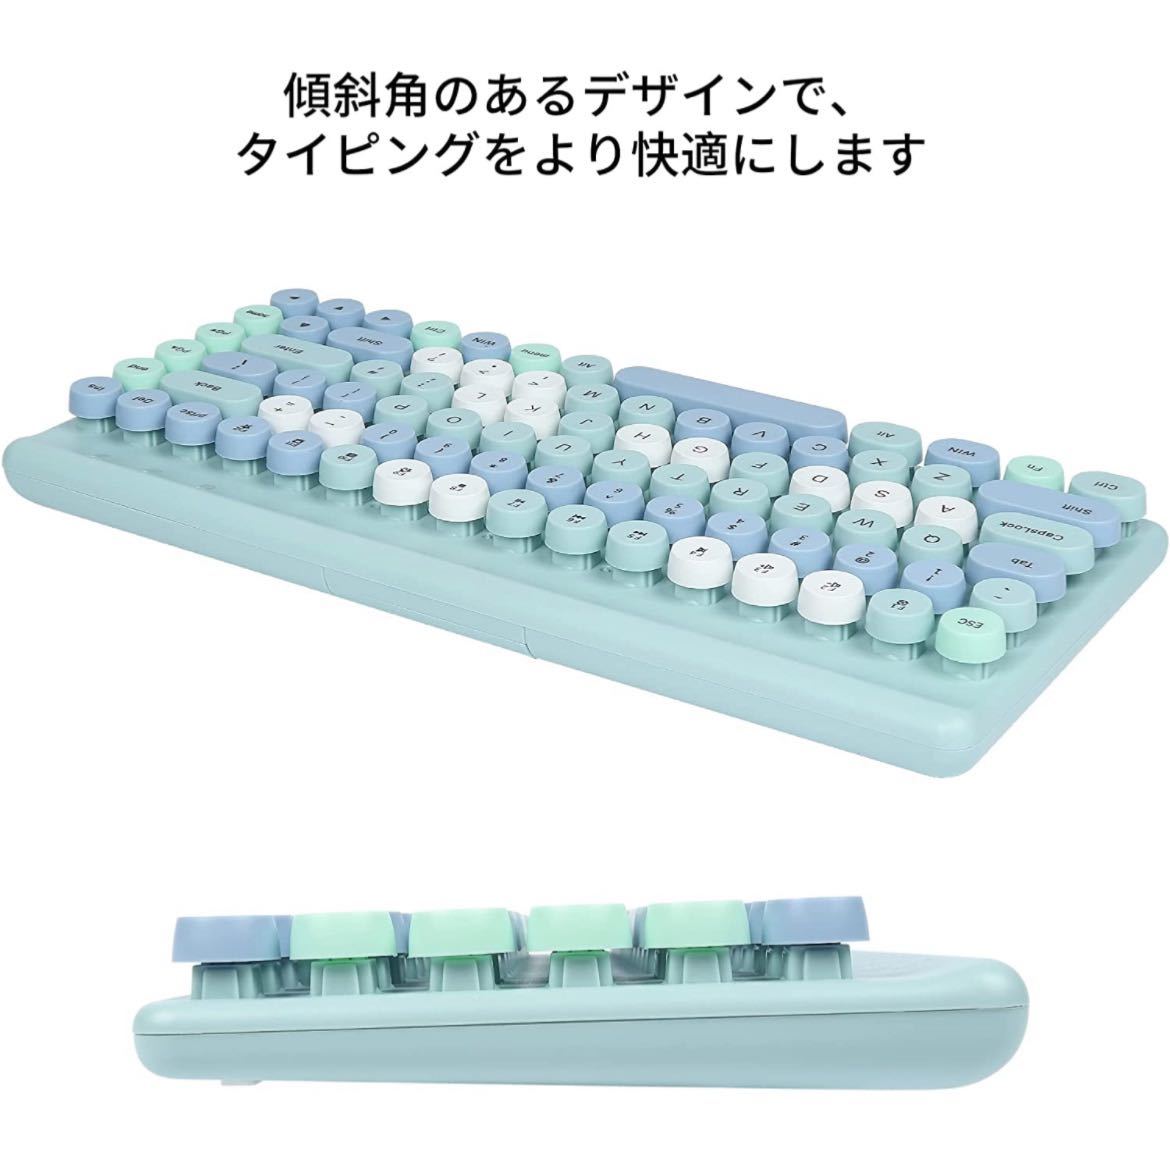 【未使用】yIFeNG★キーボードマウスセット 無線 タイプライター風 コンパクト 可愛い おしゃれなキーボード US配列 青 タイプライター★